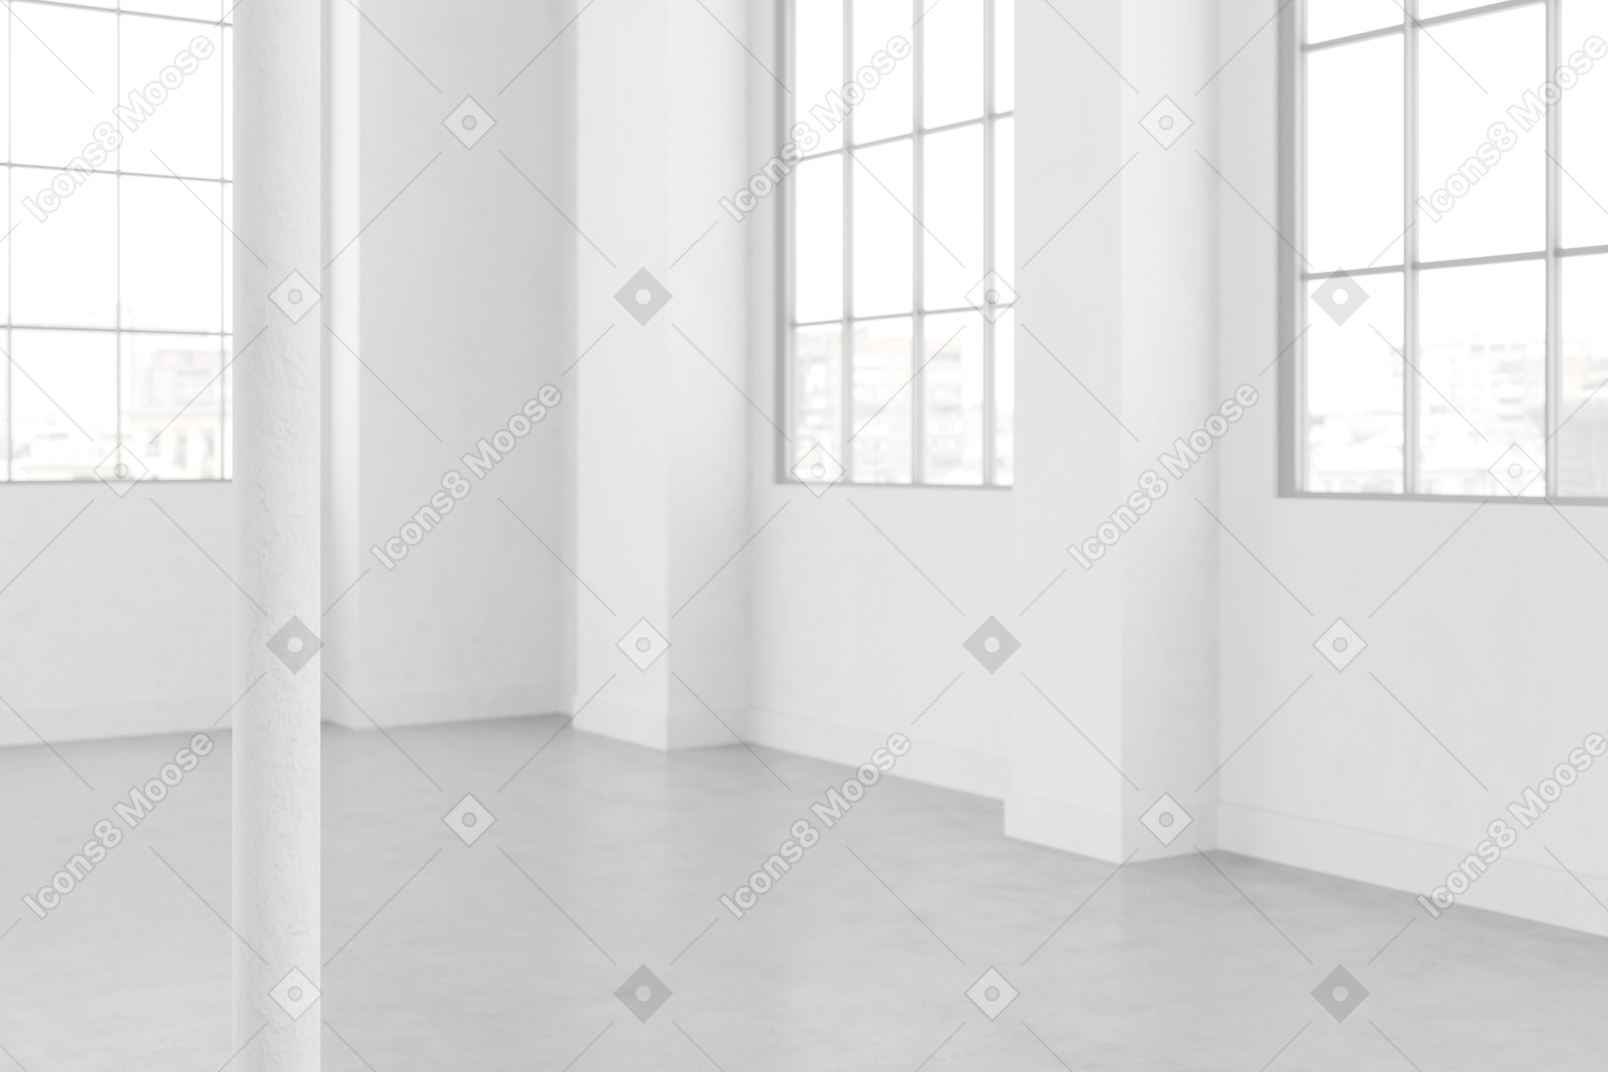 큰 유리창과 흰 벽이 있는 방